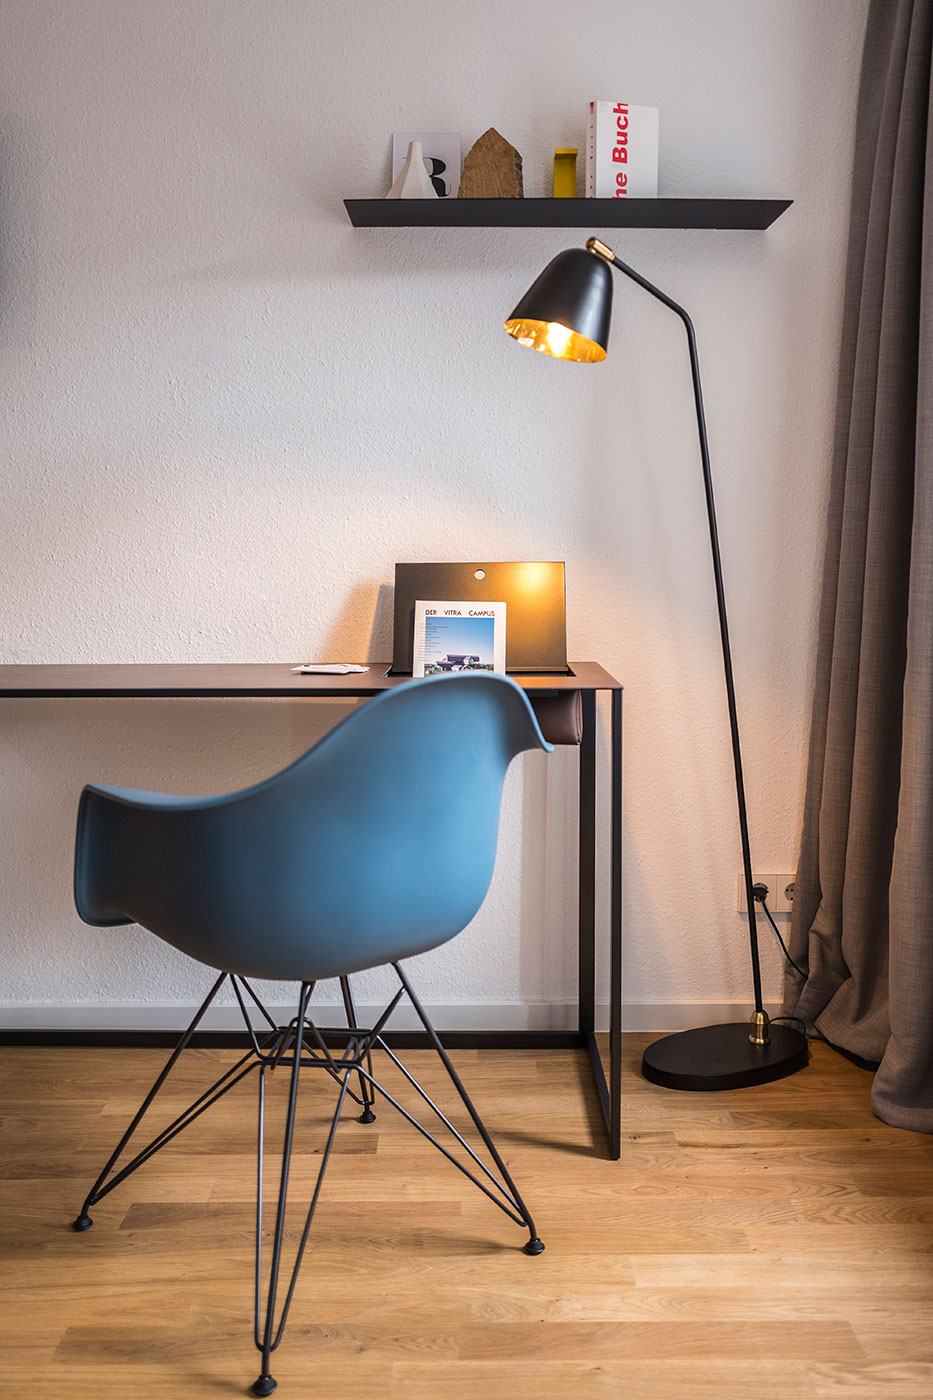 Designer furniture shapes rooms | Concept Room by Stilobjekt